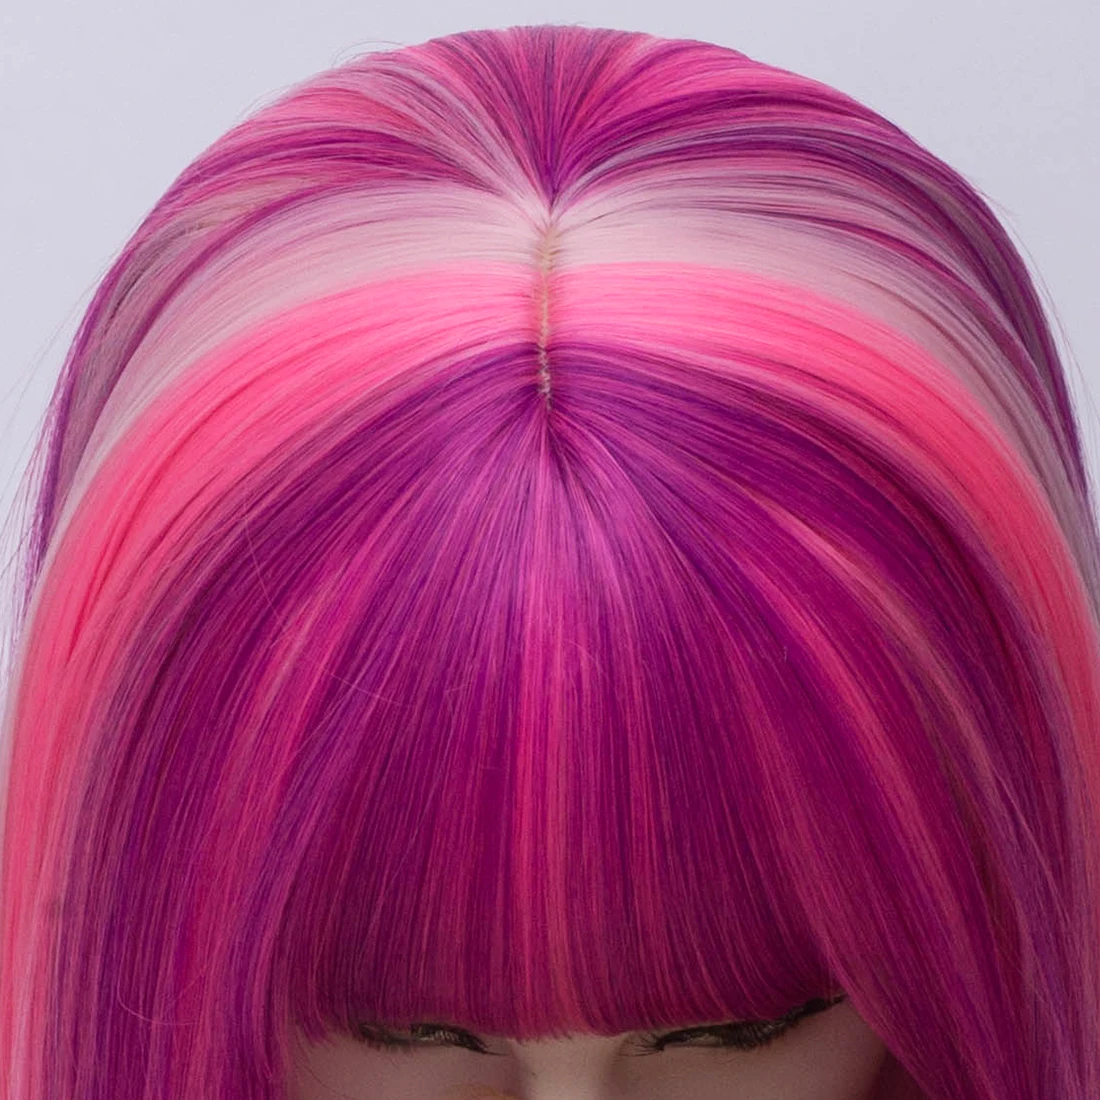 Similler для женщин короткий боб парики синтетические волосы Розовый Красный Омбре прямые волосы парик для косплея